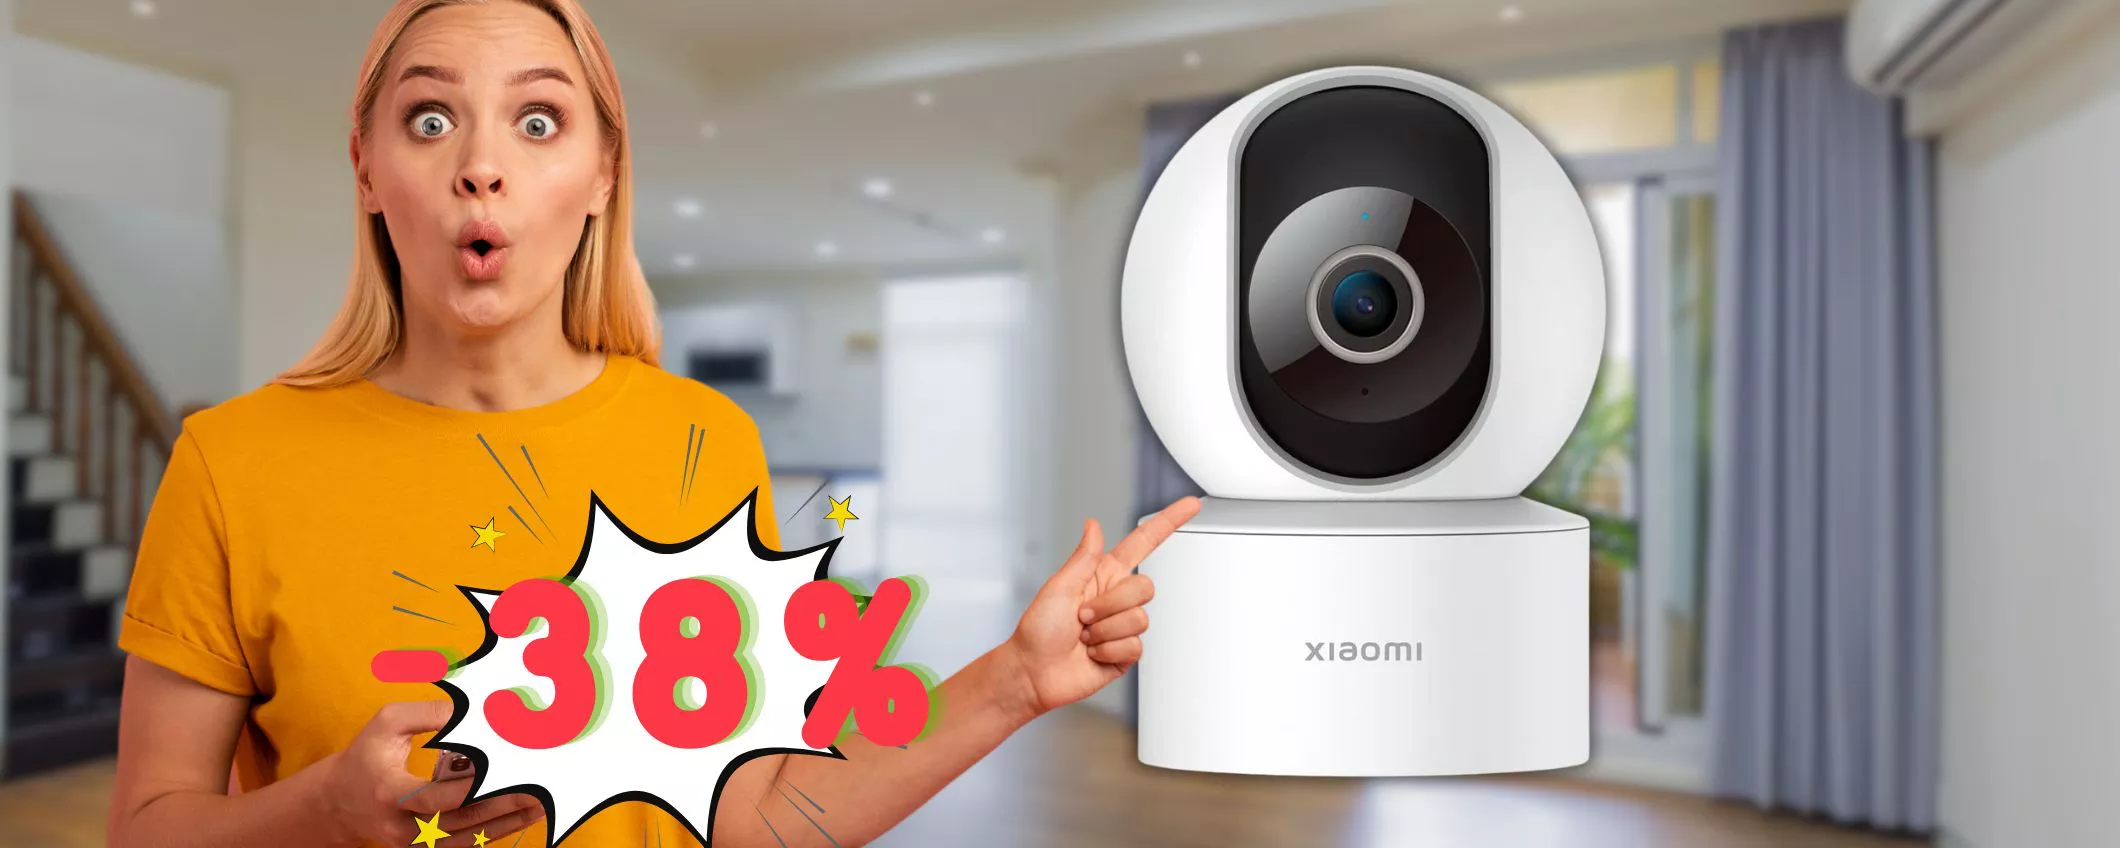 Non perdere la Xiaomi Smart Camera C200 quasi a metà prezzo! (27,99€)